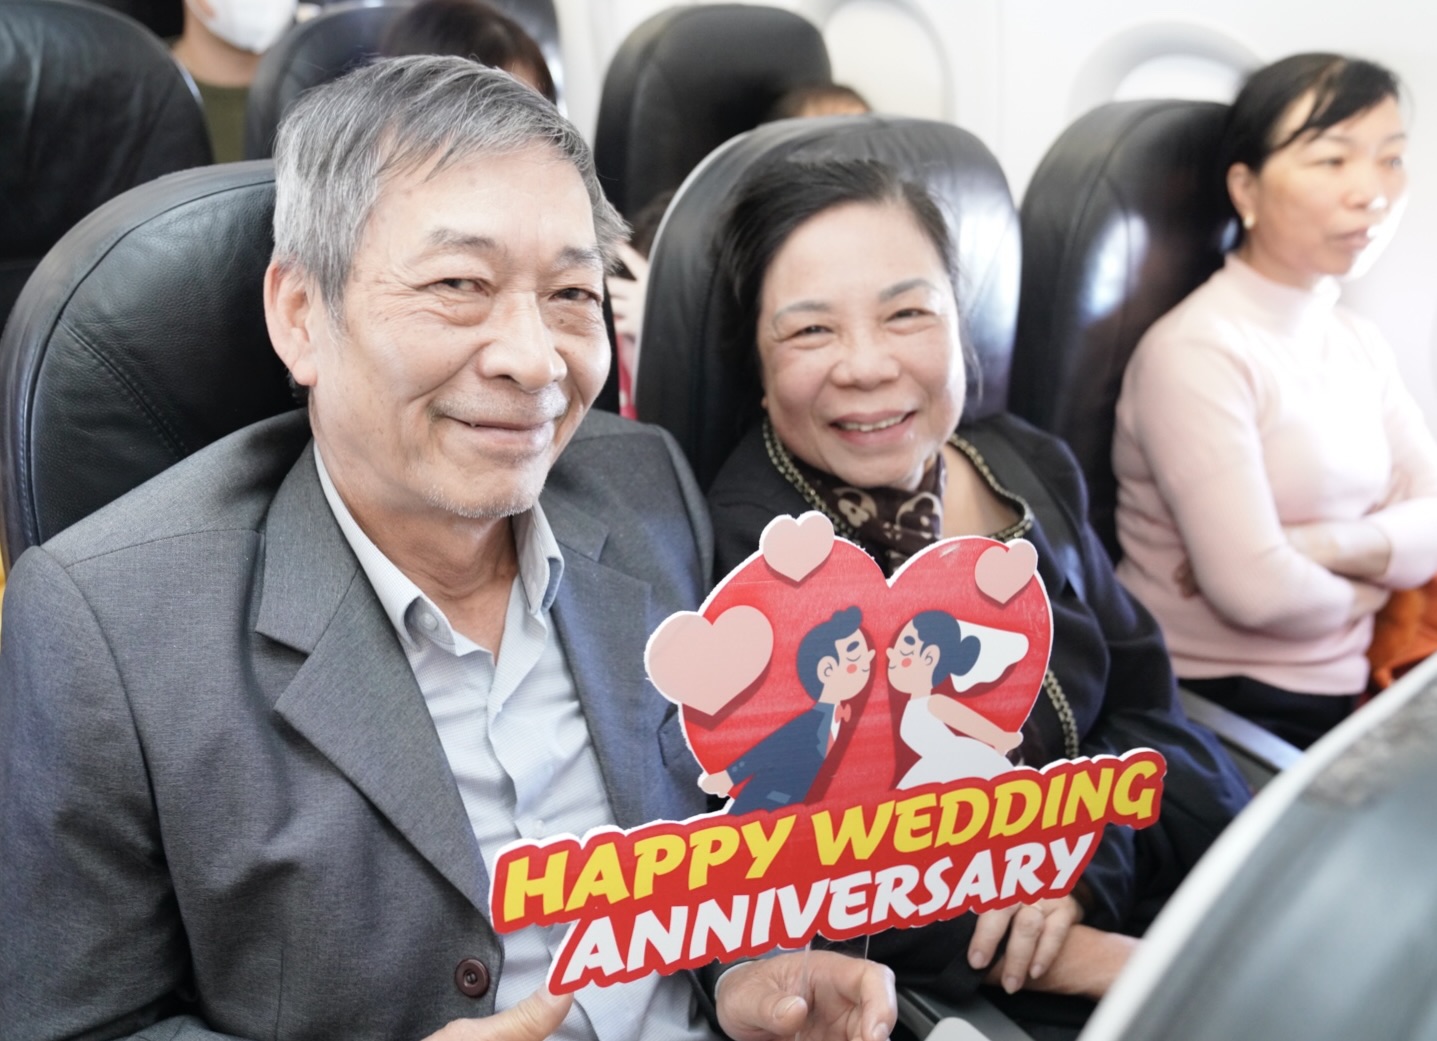 Cụ ông U90 tỏ tình với vợ ngọt ngào trên chuyến bay Vietjet ngày Valentine- Ảnh 8.